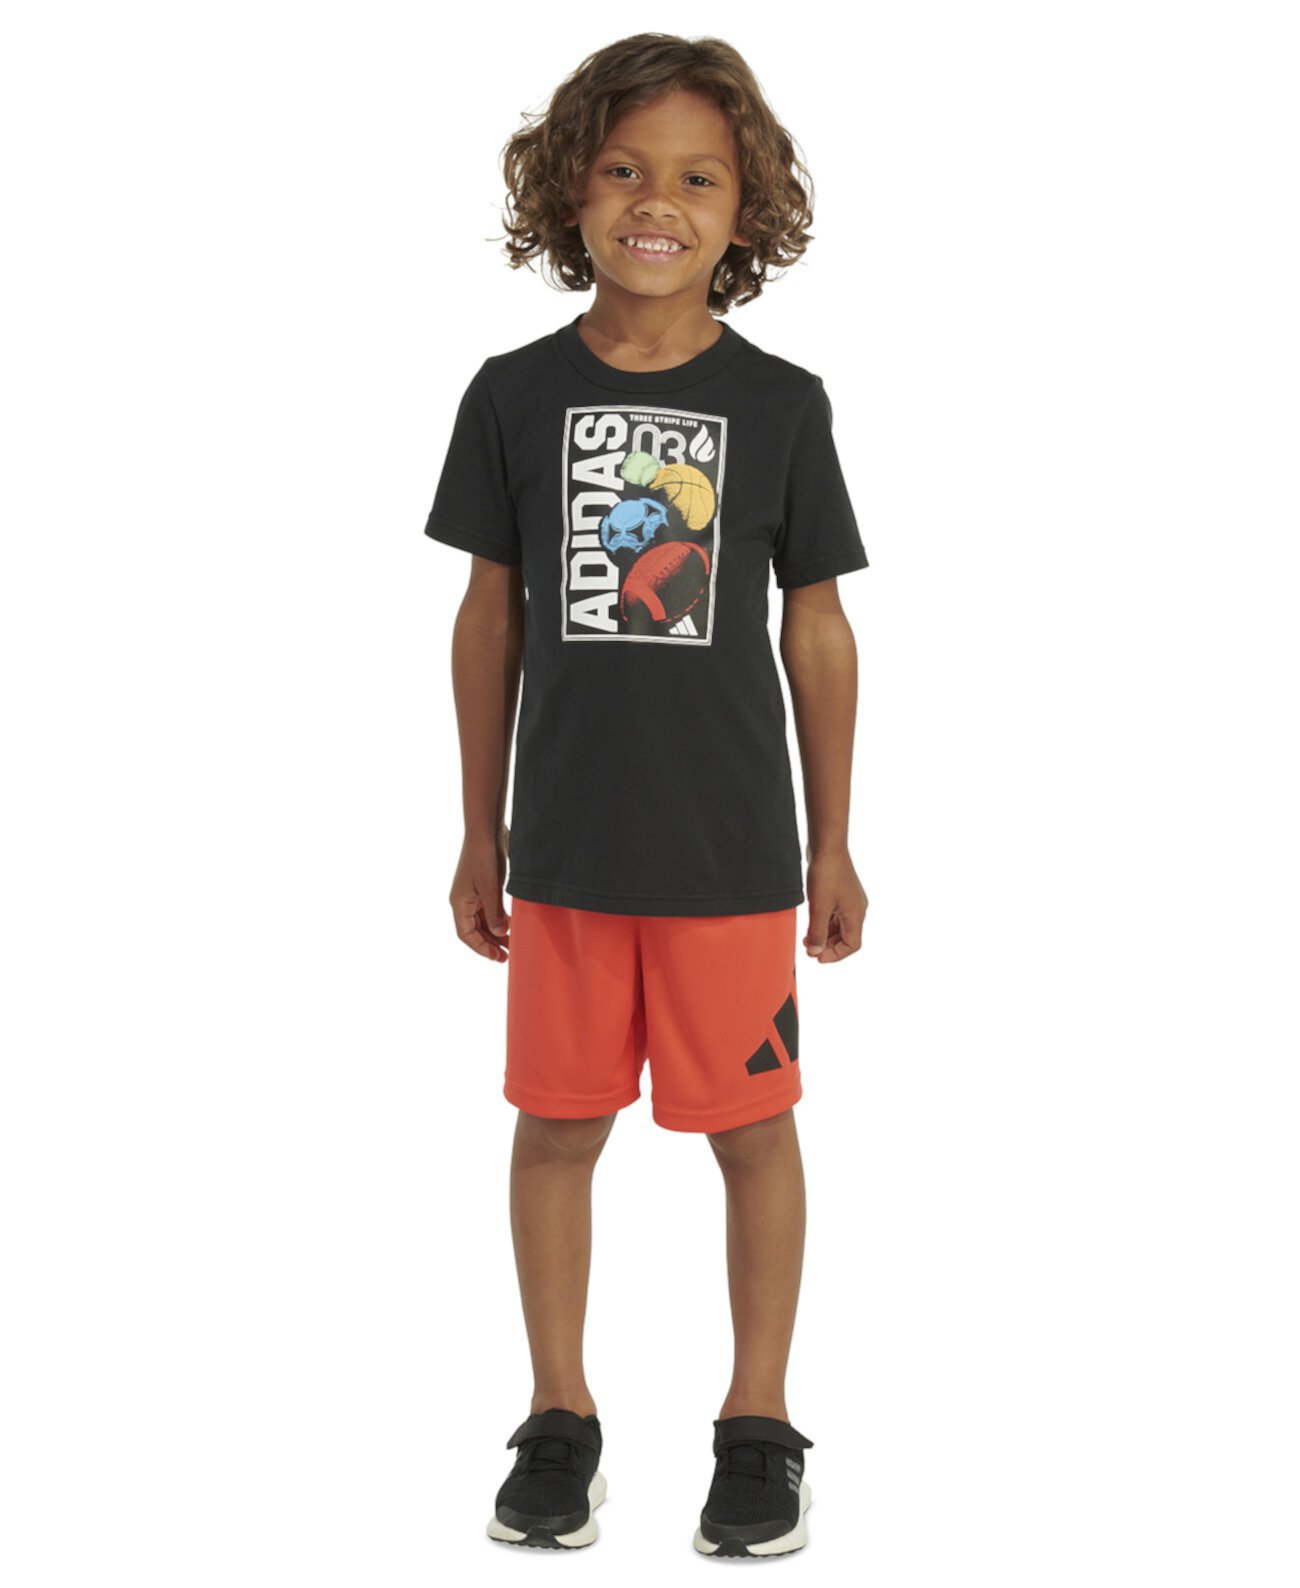 Футболка и шорты Essential для малышей и маленьких мальчиков, комплект из 2 предметов Adidas